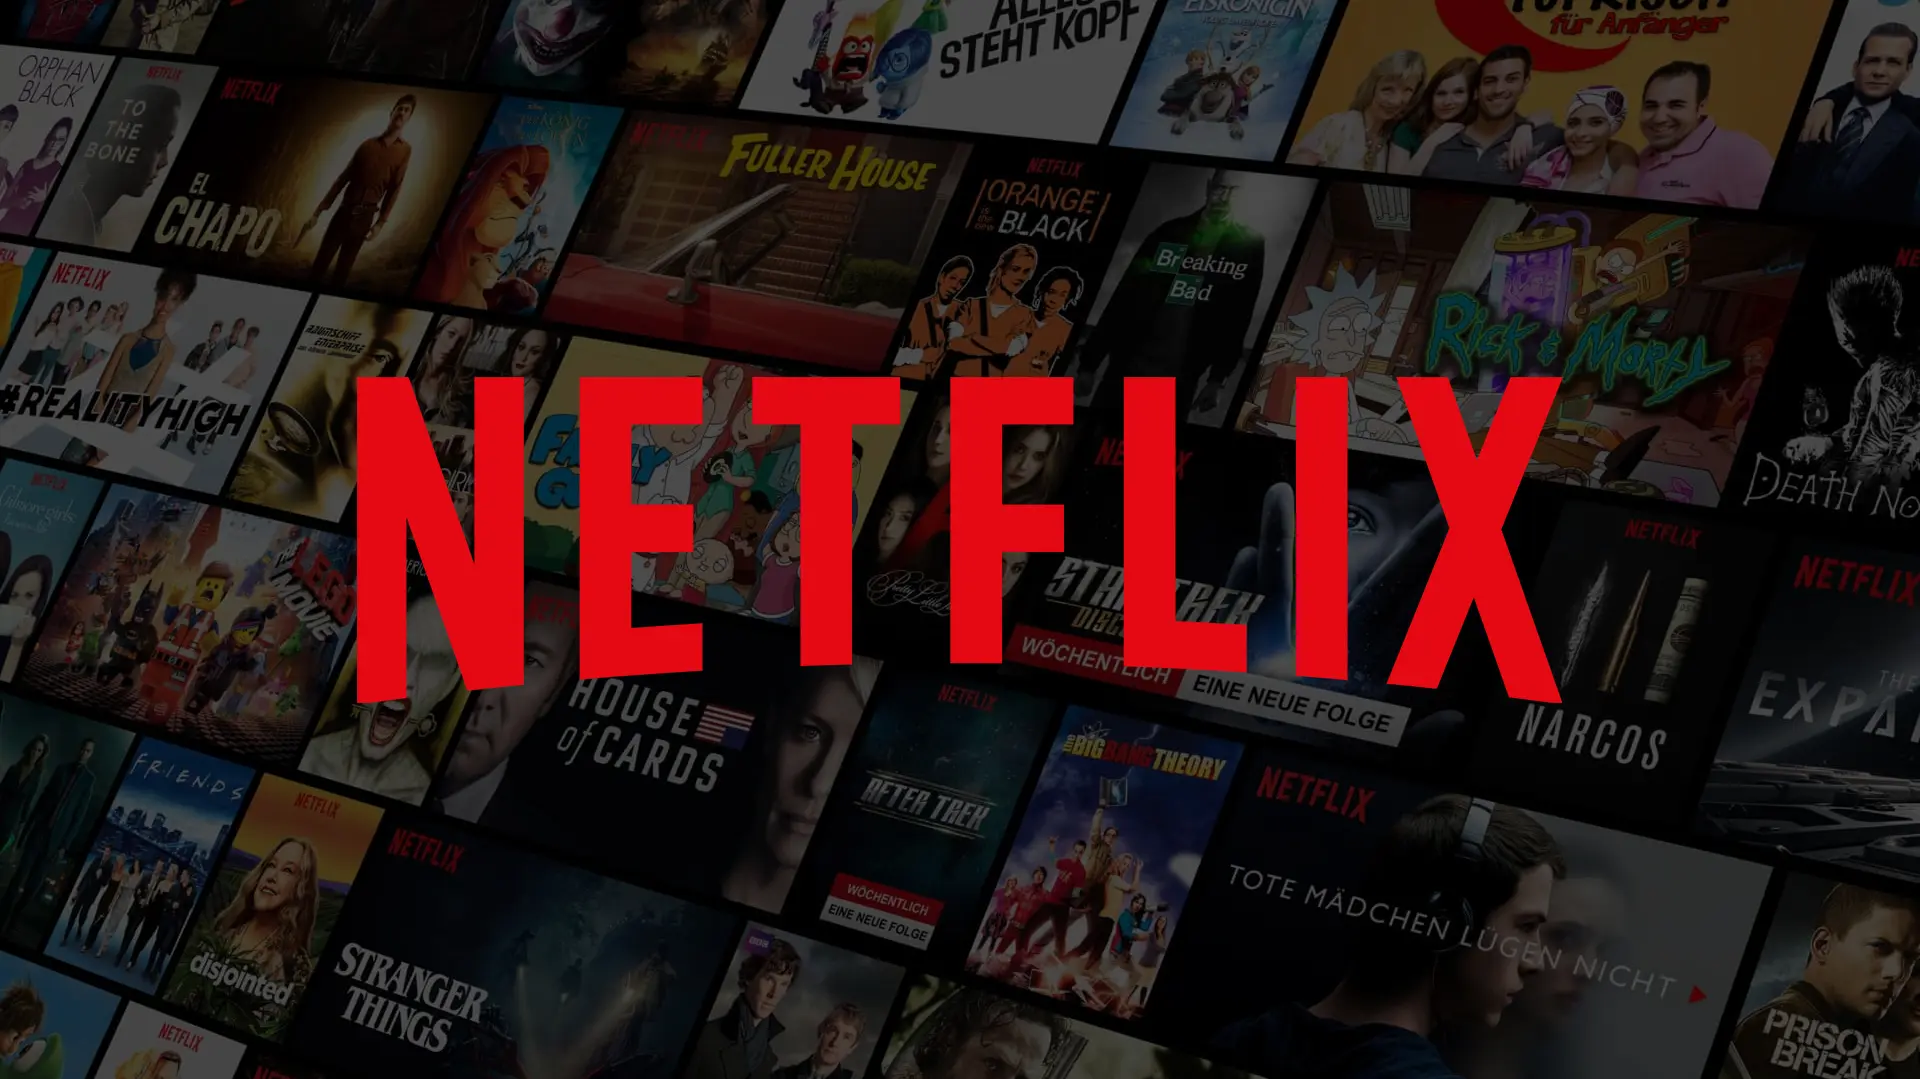 Netflix bekommt diese Woche einen Berg neuer Serien Titel